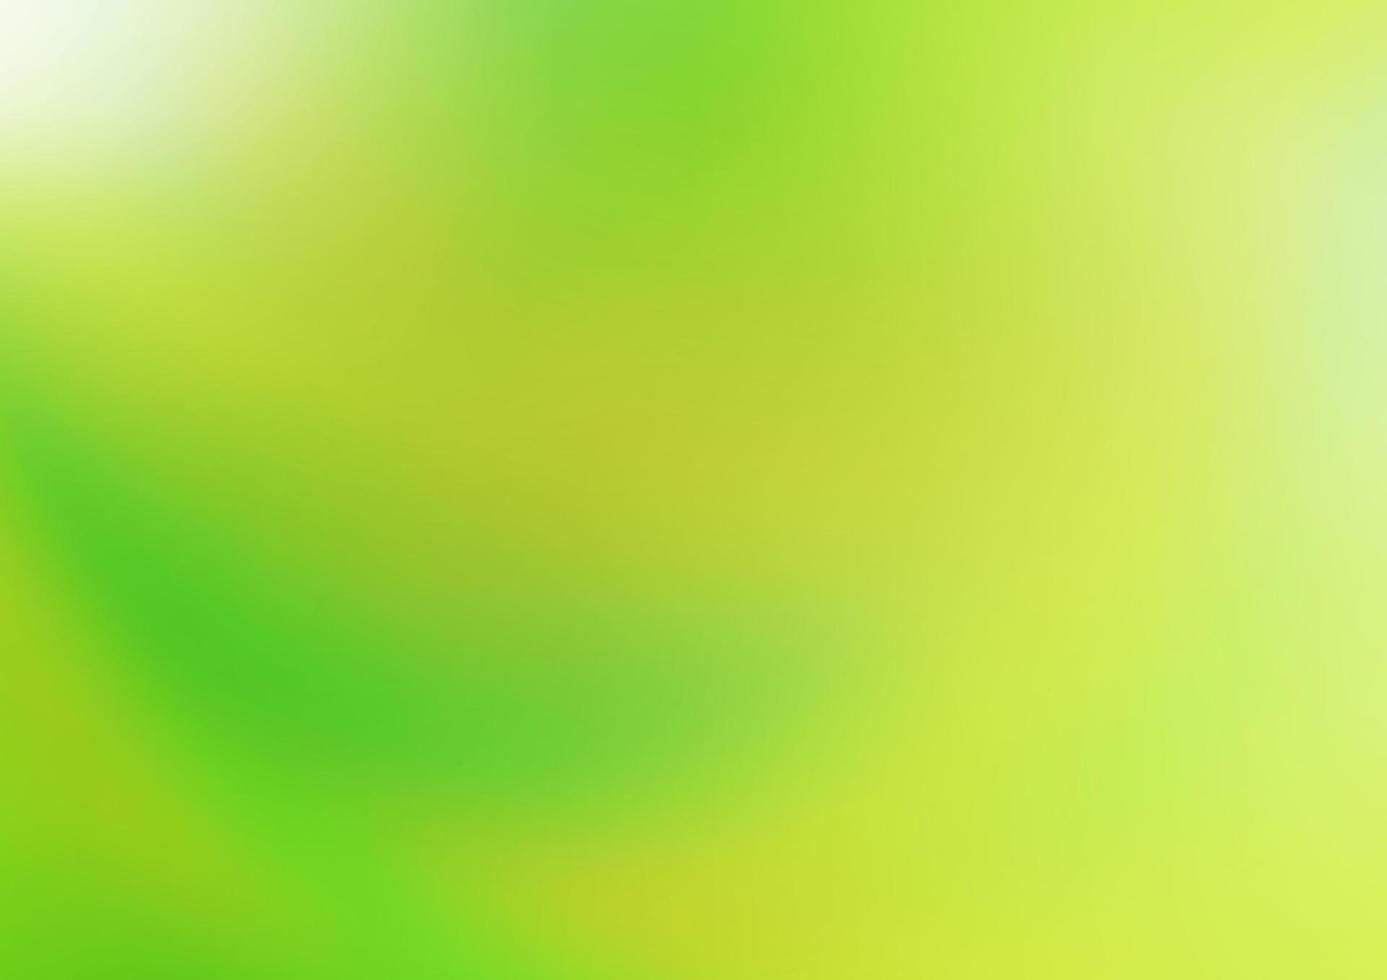 ljusgrön, gul vektor glansig abstrakt bakgrund.